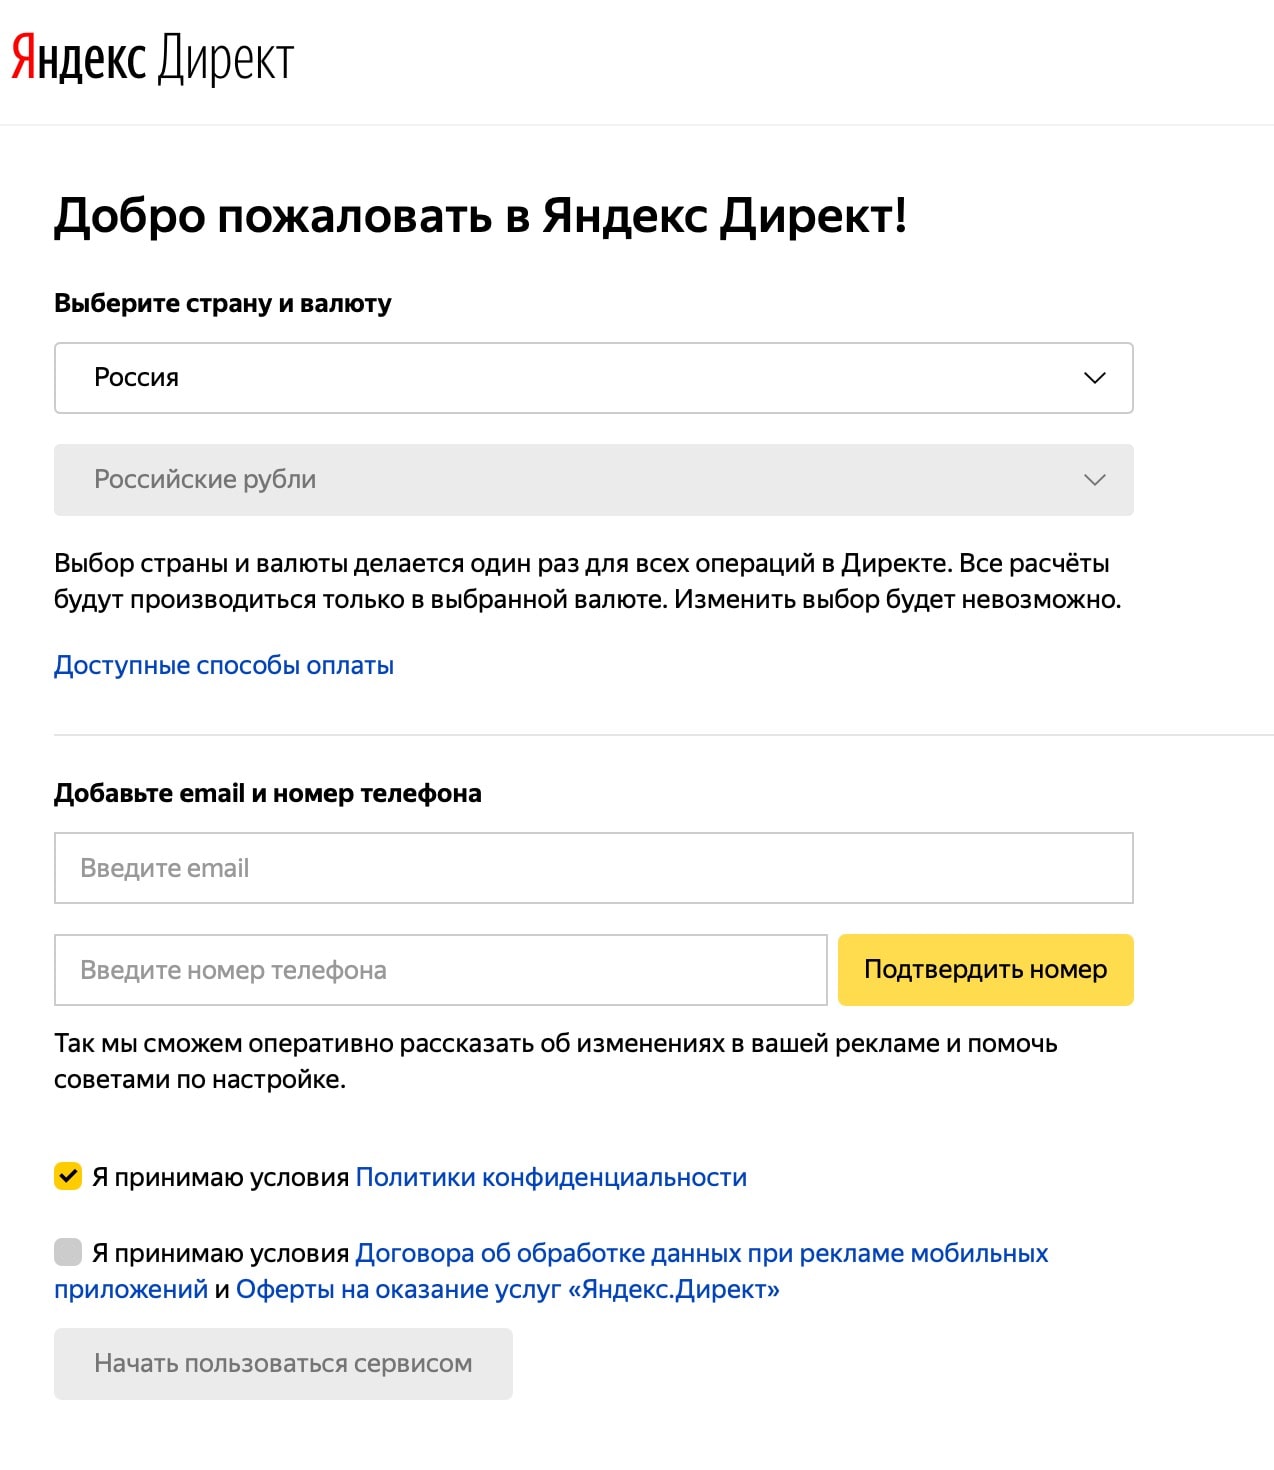 Кабинет Яндекс Директ